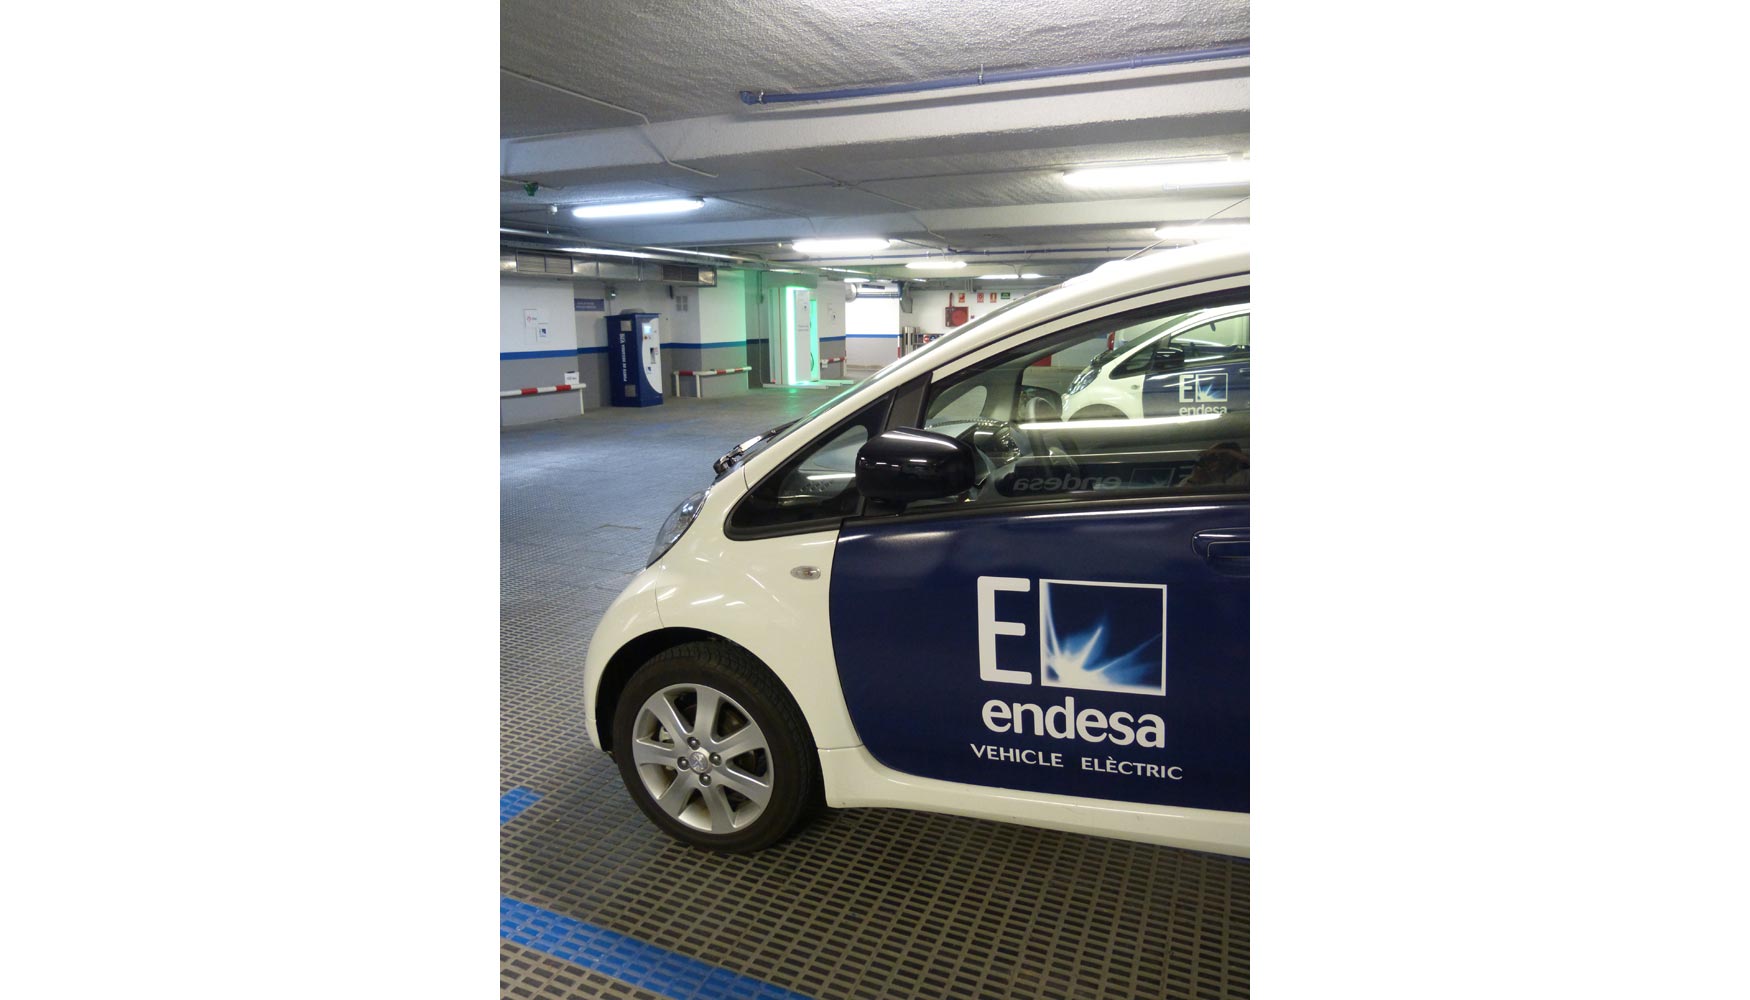 Vehculo elctrico de Endesa en el e-parking